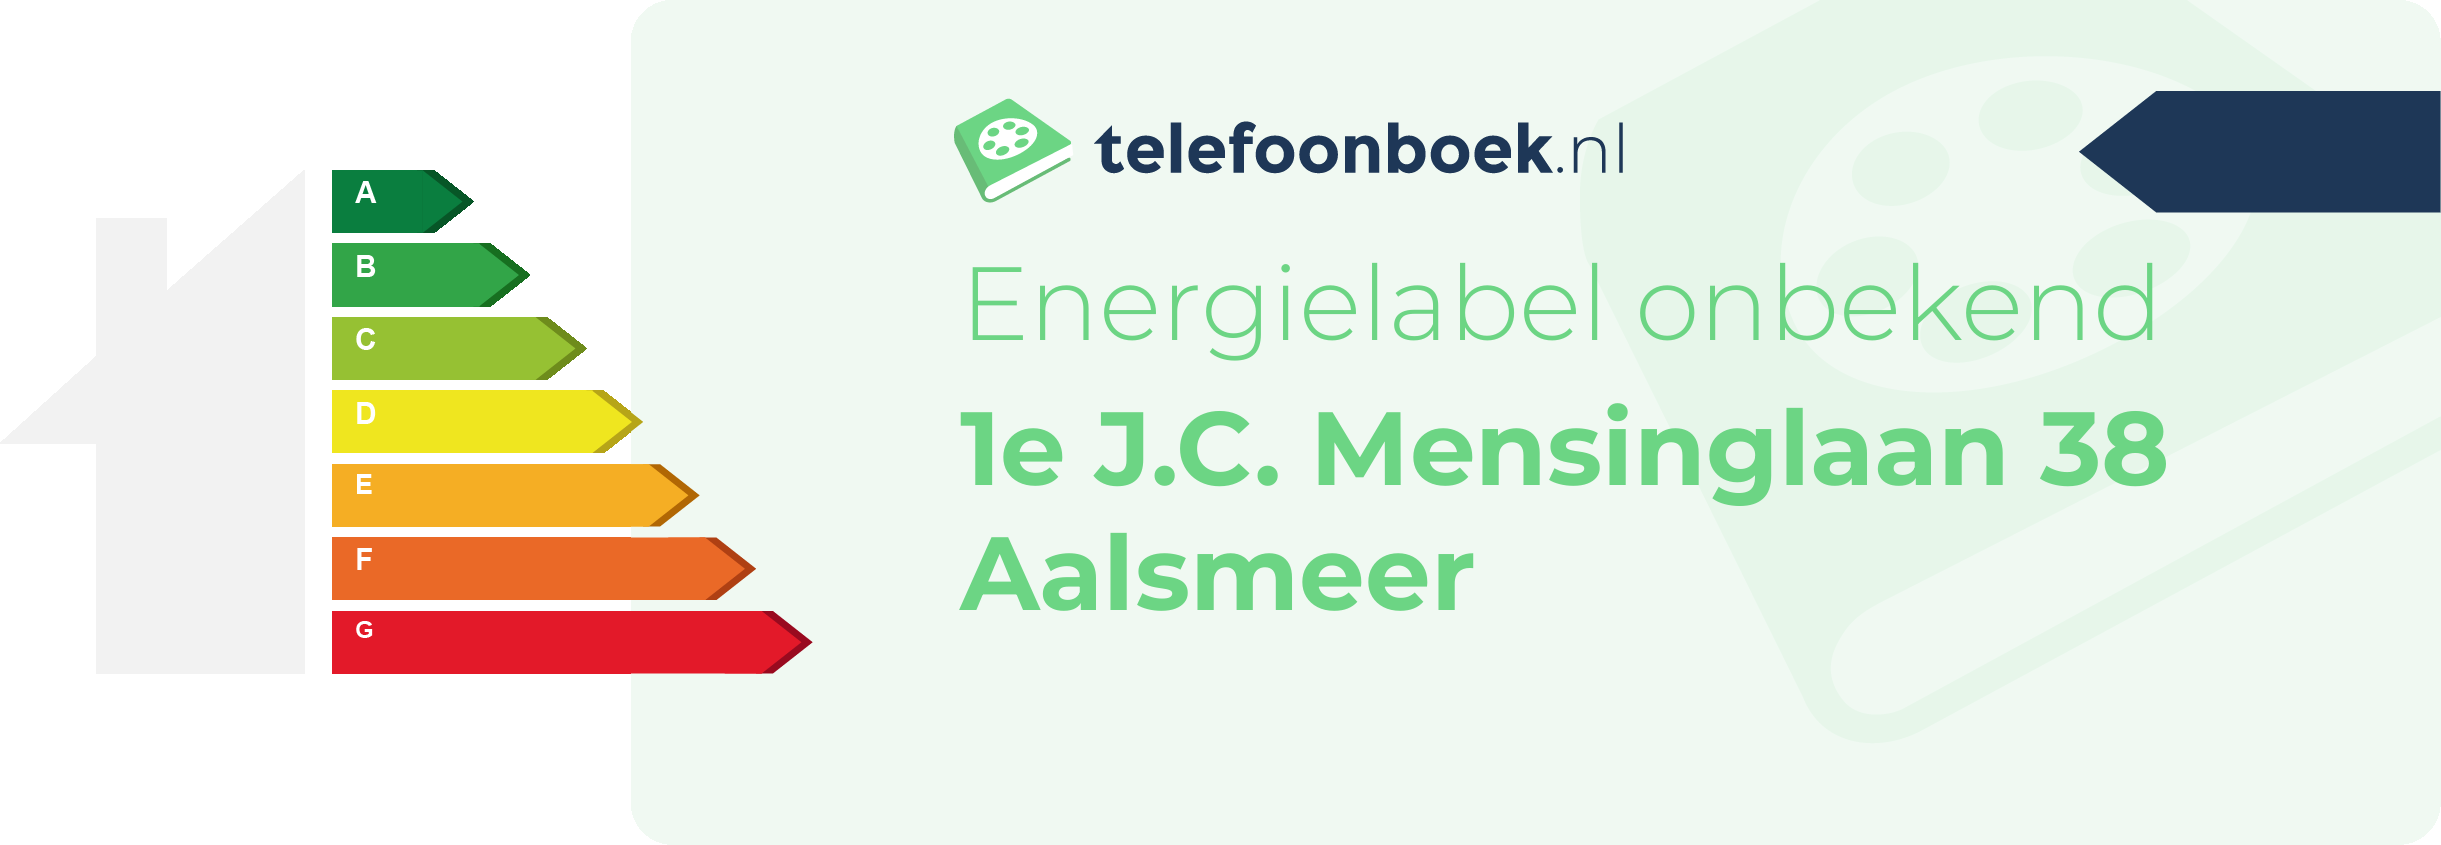 Energielabel 1e J.C. Mensinglaan 38 Aalsmeer